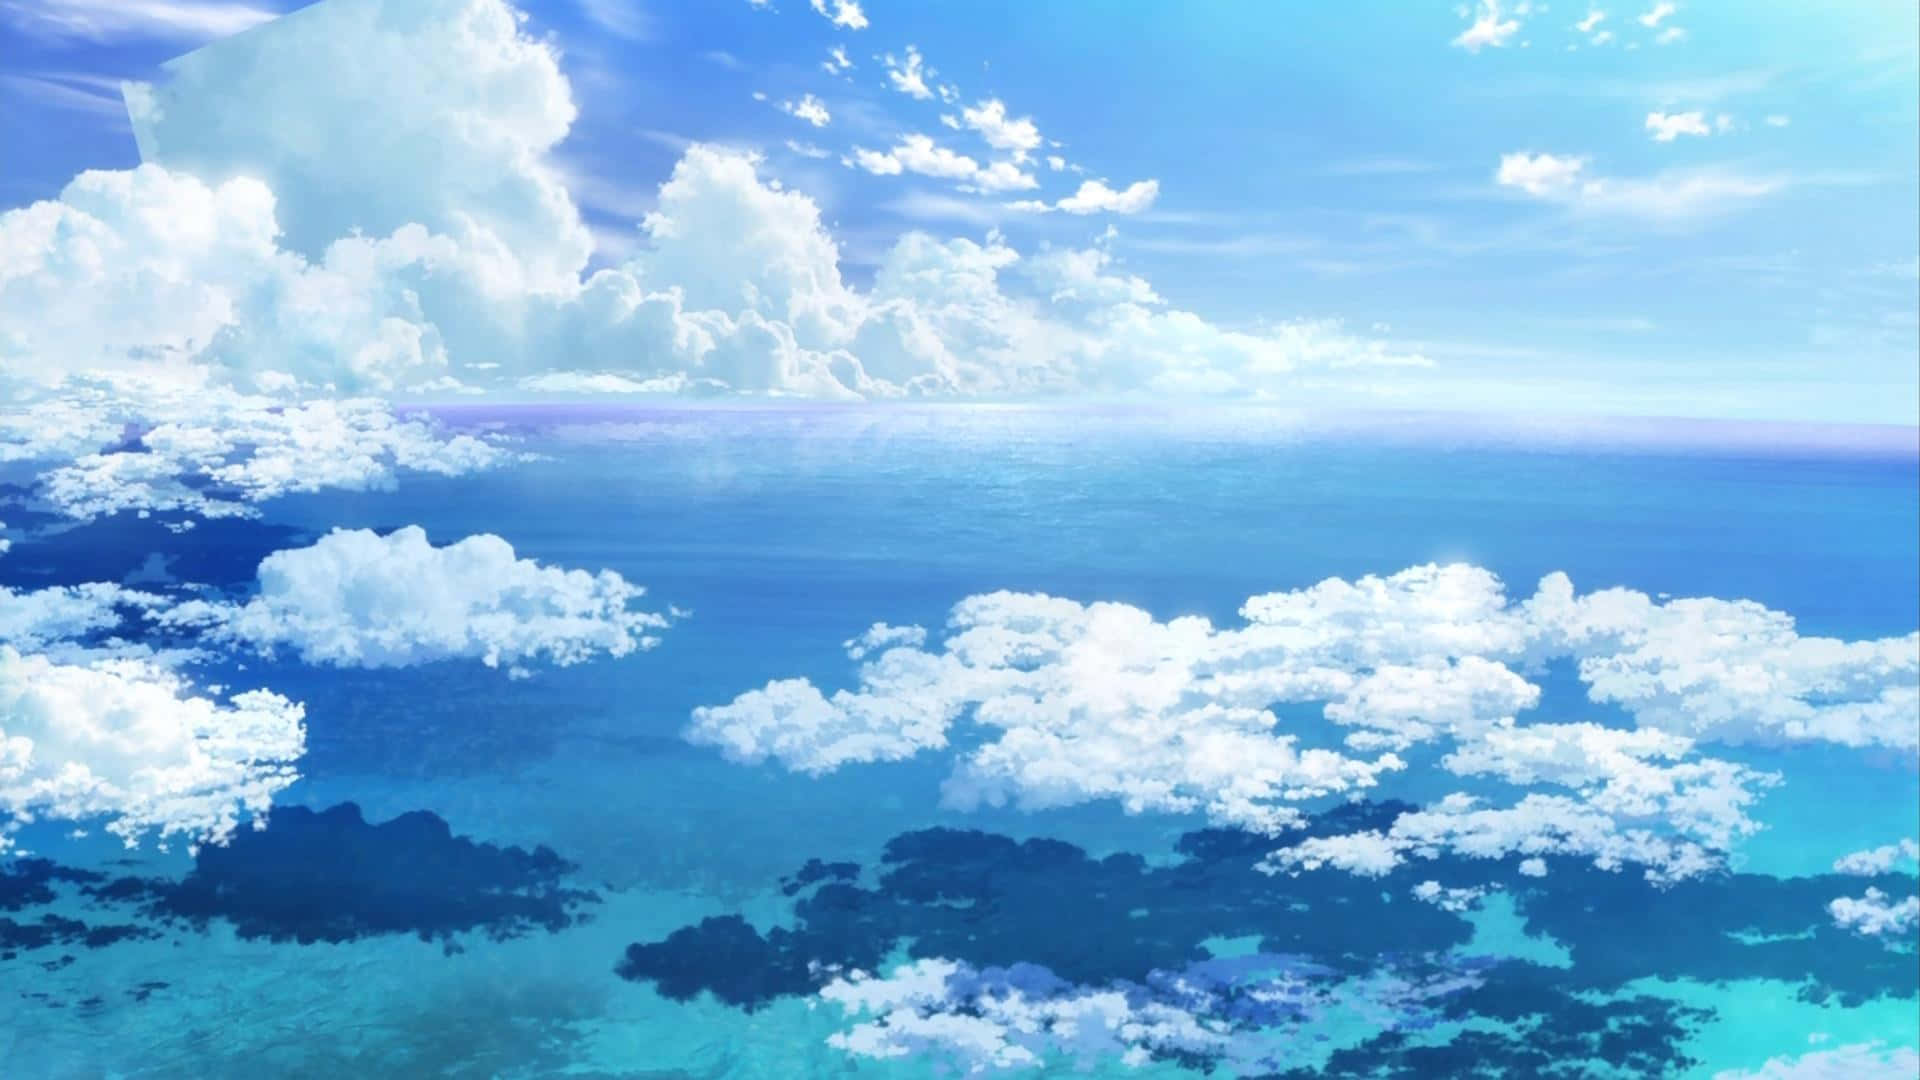 Anime Sky And Ocean